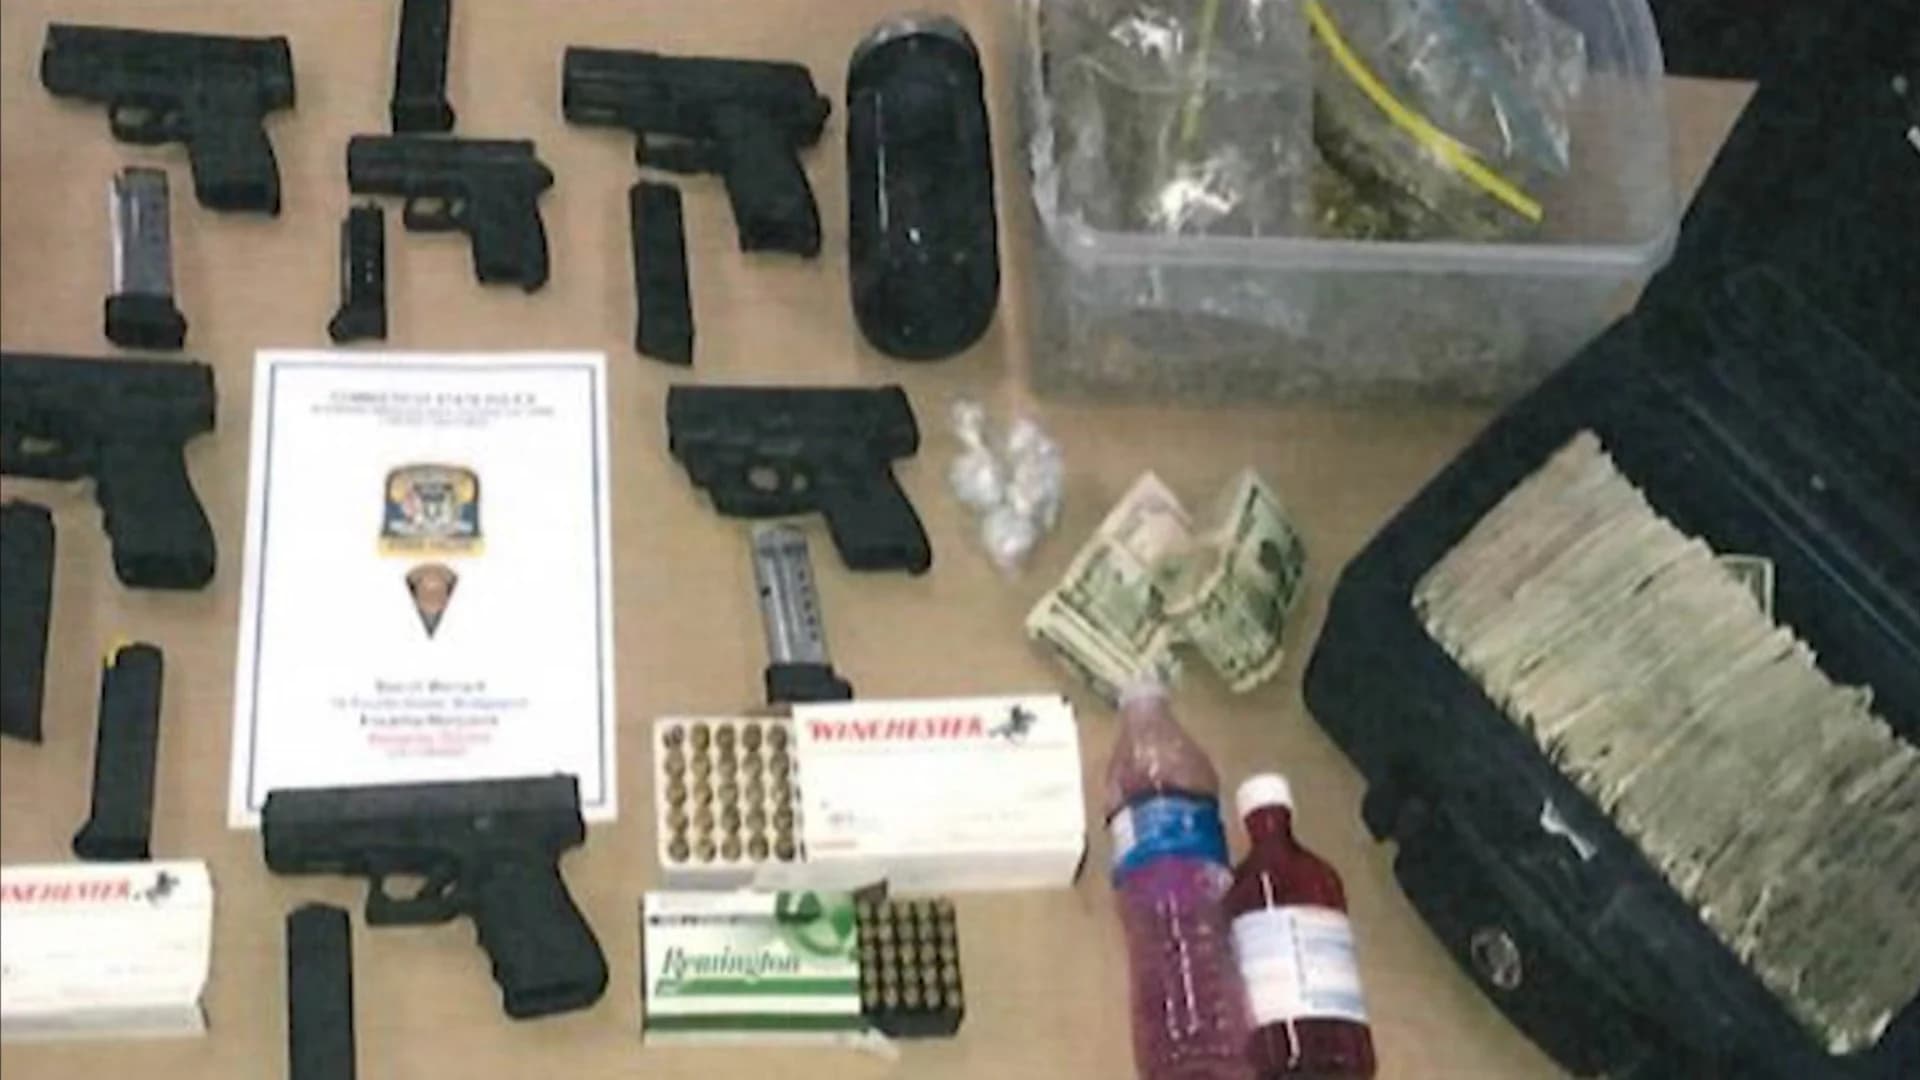 Police seize guns, drugs & cash in Bridgeport raid